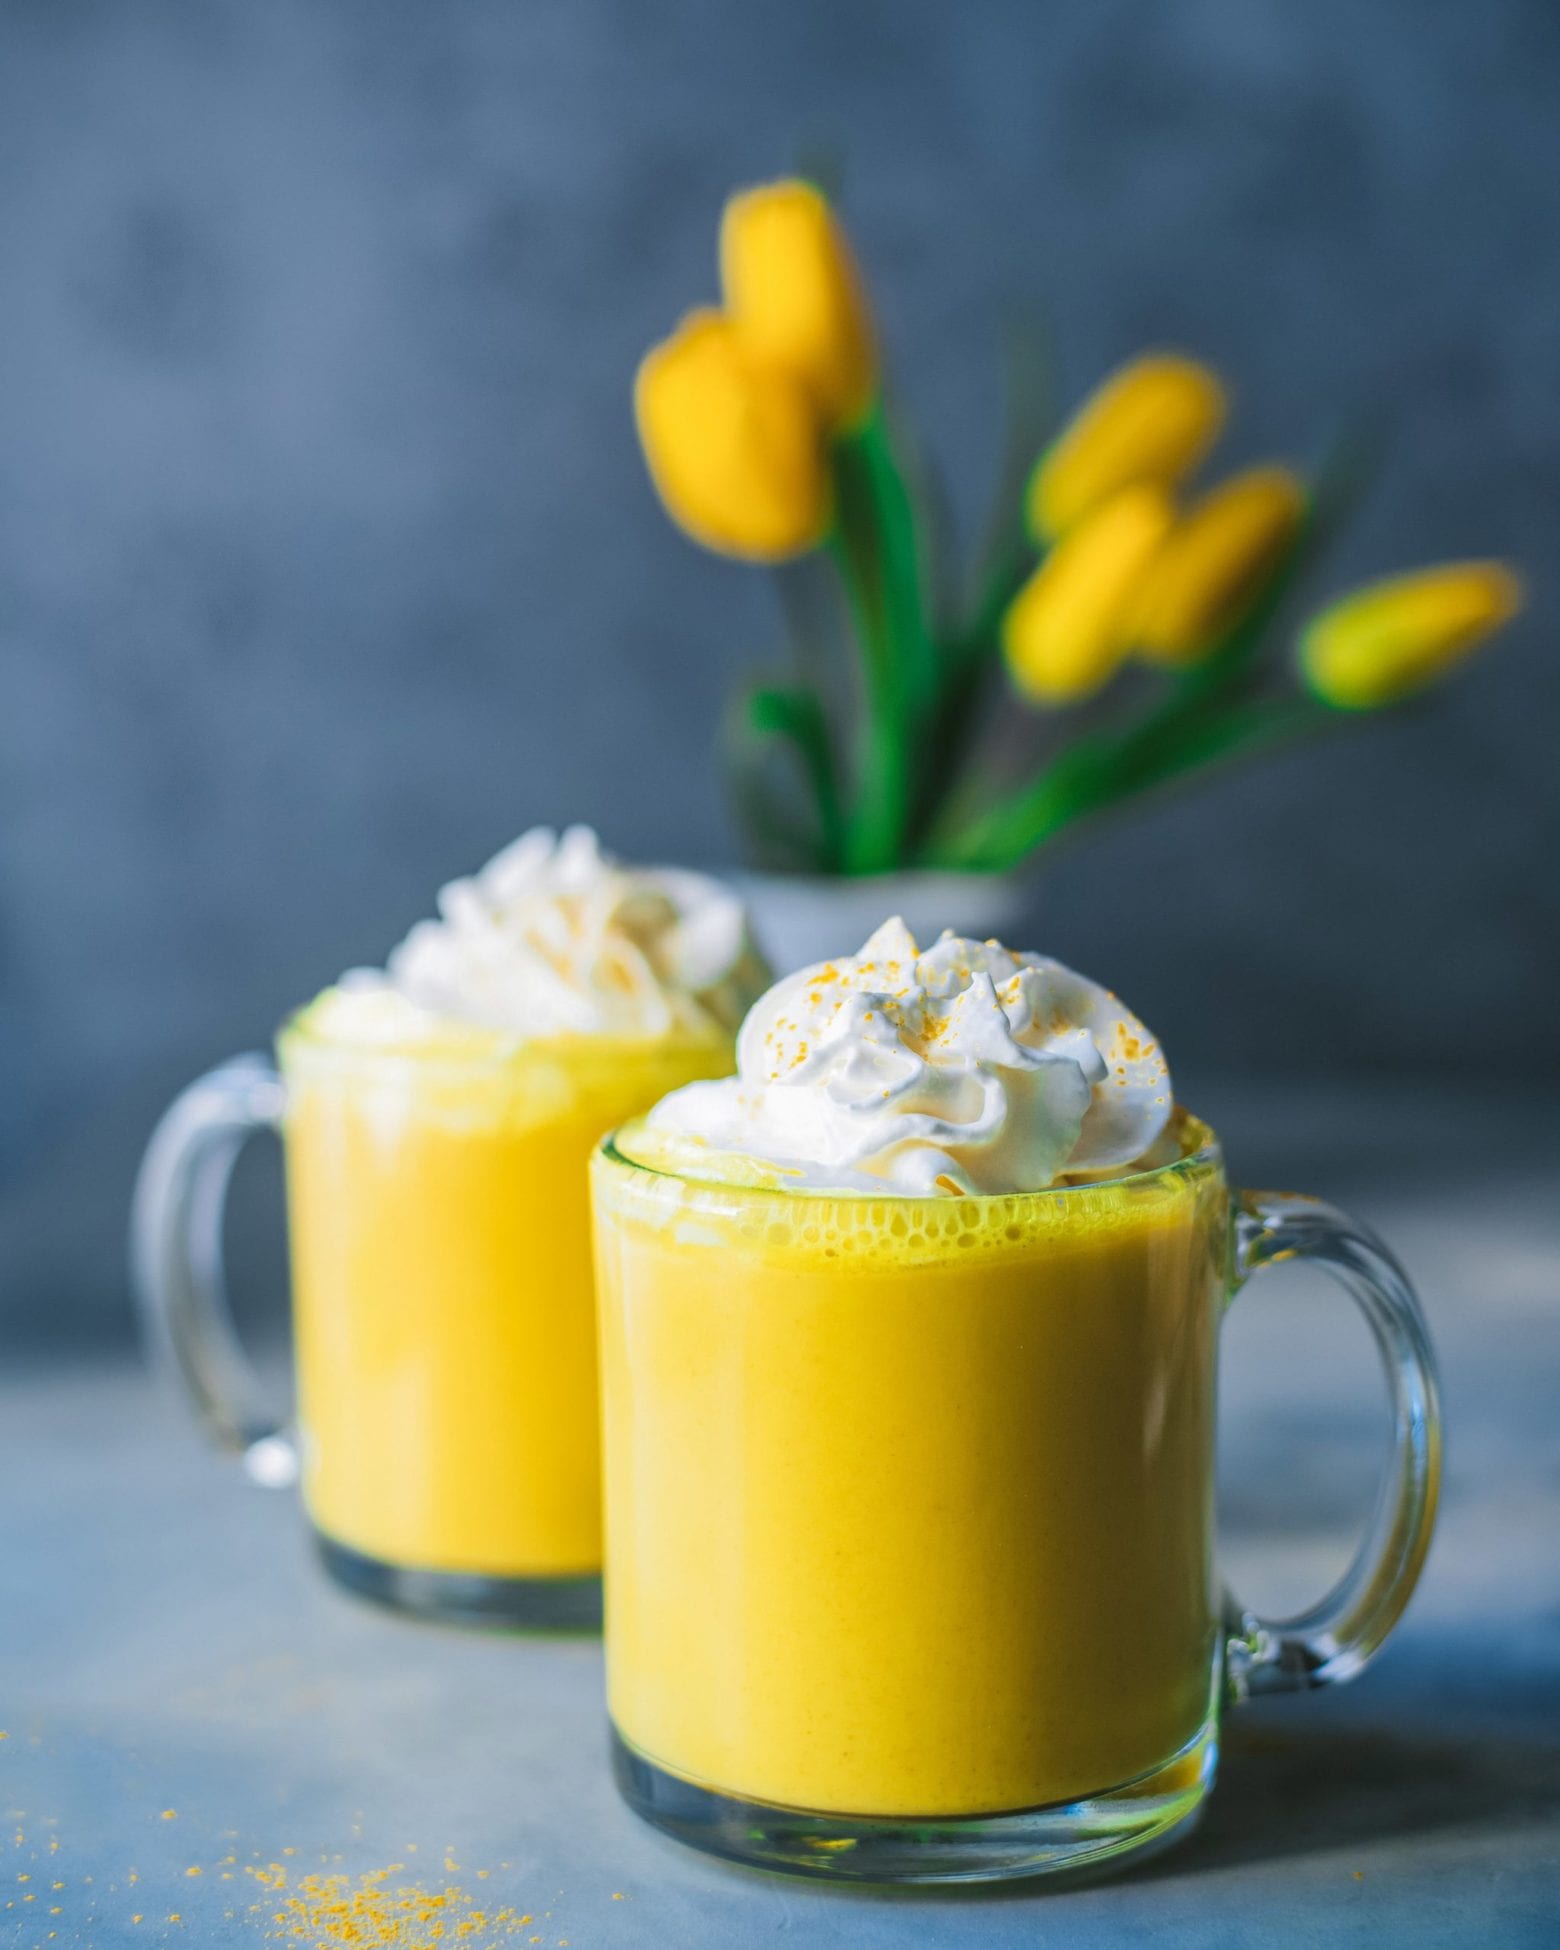 Turmeric Latte, Superfood plant-based latte